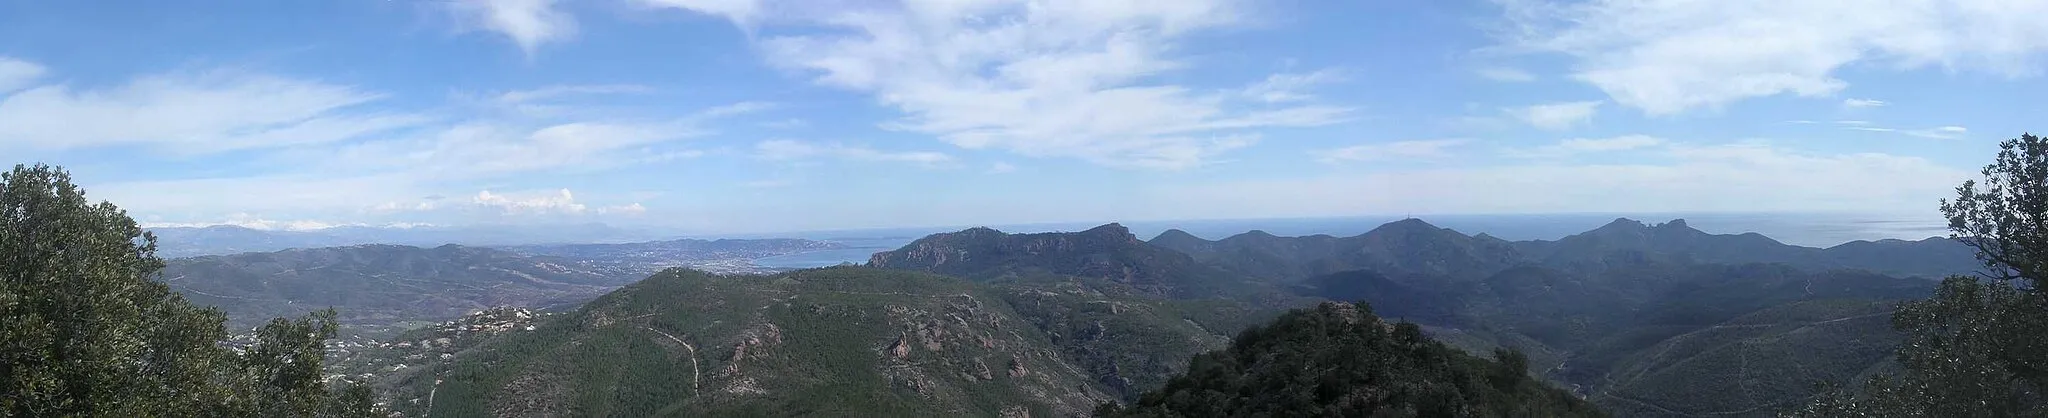 Photo showing: Vue panoramique sur les Monts de l'Esterel (Pic de l'Ours, Cap roux), au loin les Monts du mercantour.